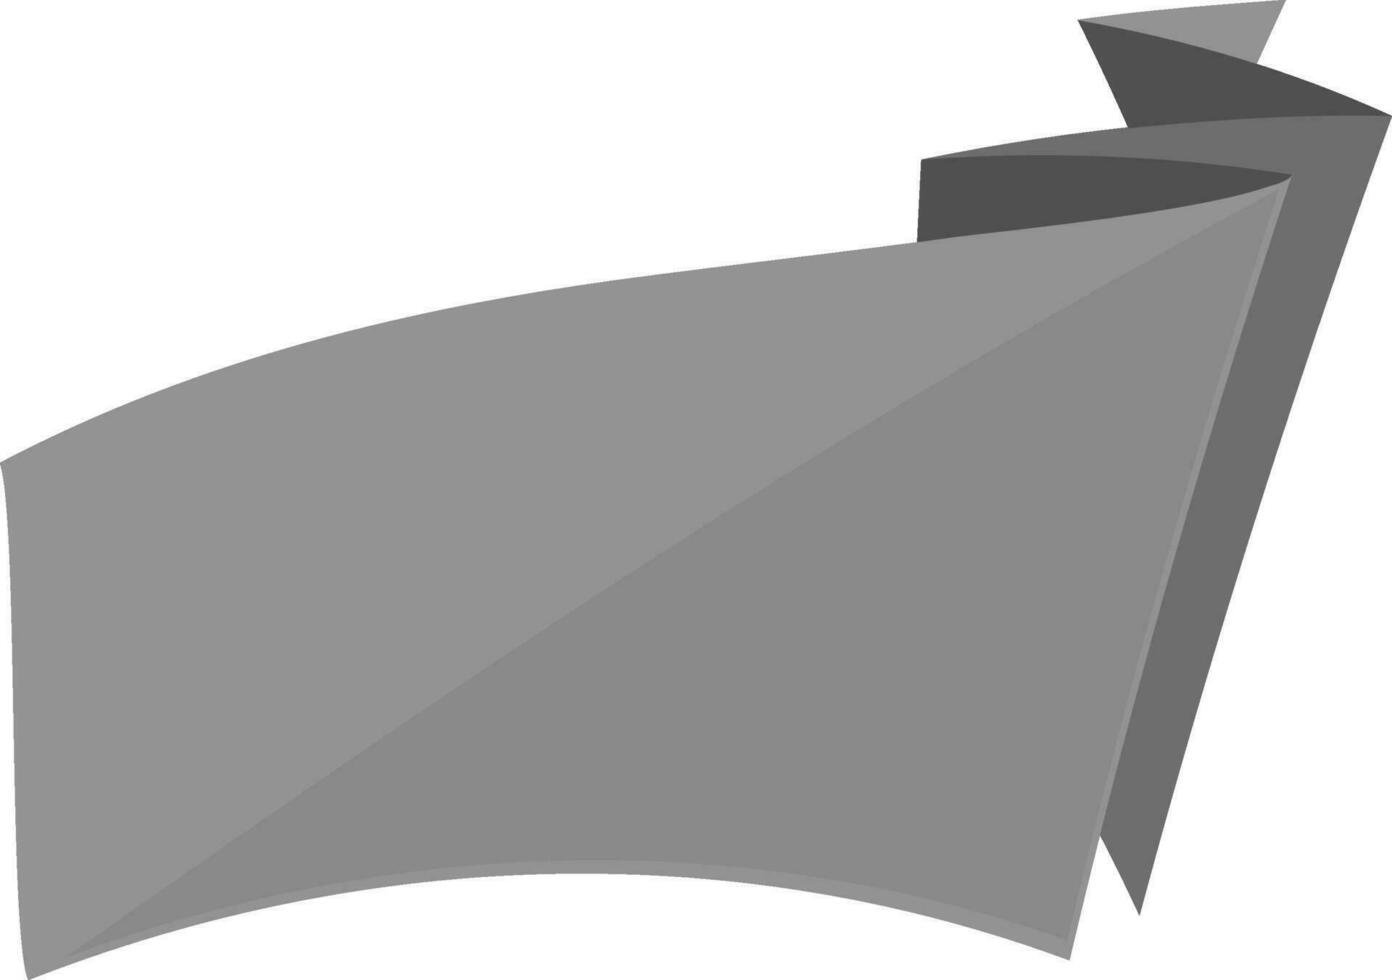 Blank gray and black ribbon. vector